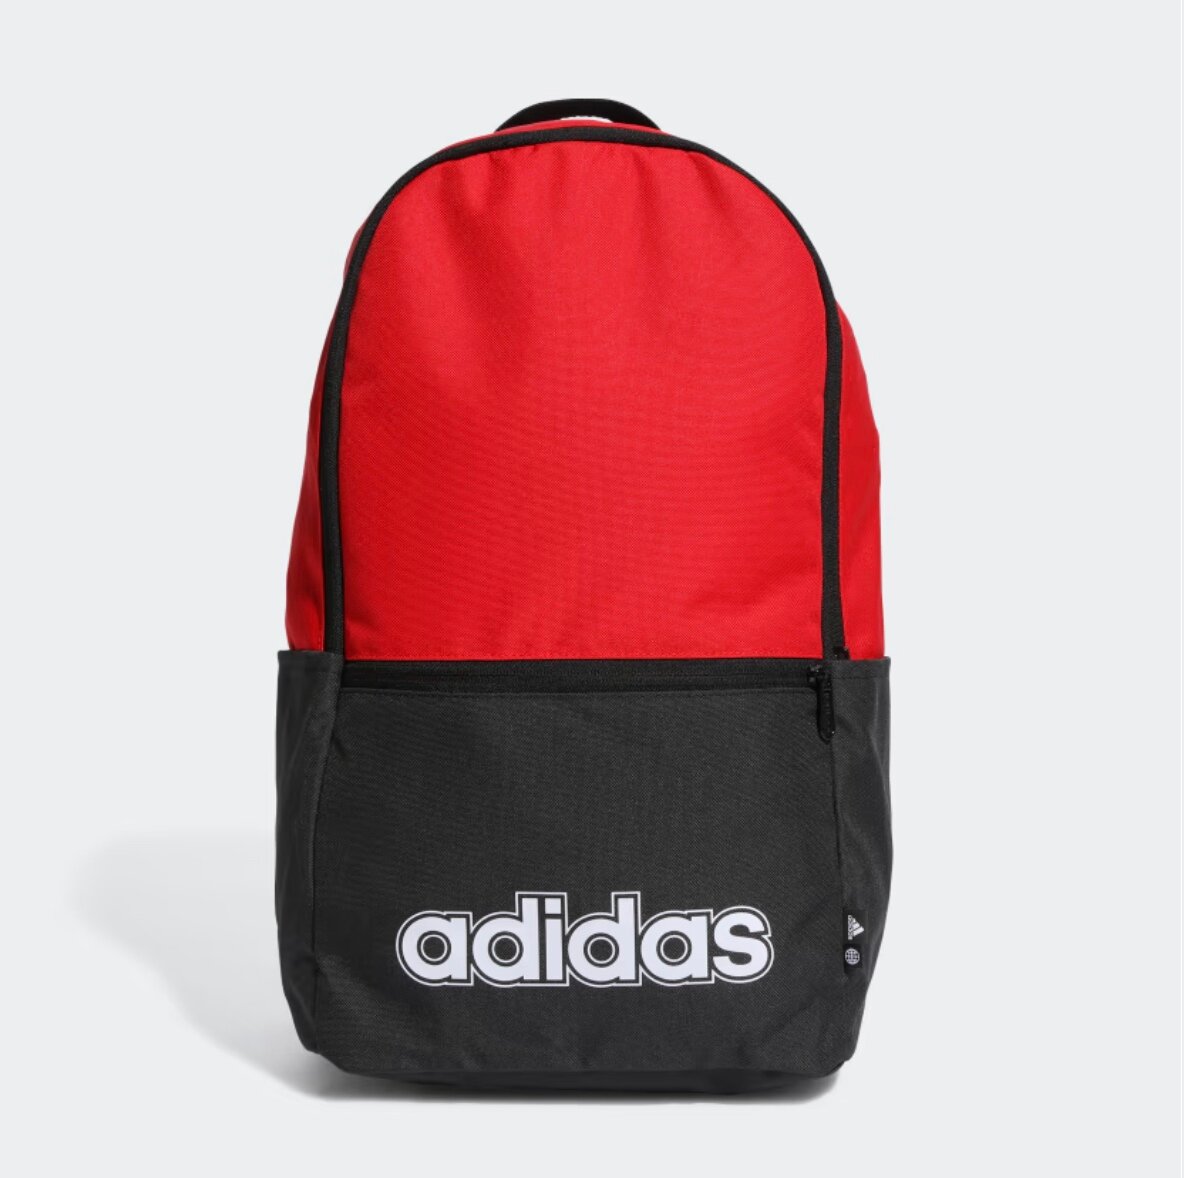 Рюкзак Adidas Classic Foundation - универсальный рюкзак объемом 20 литров